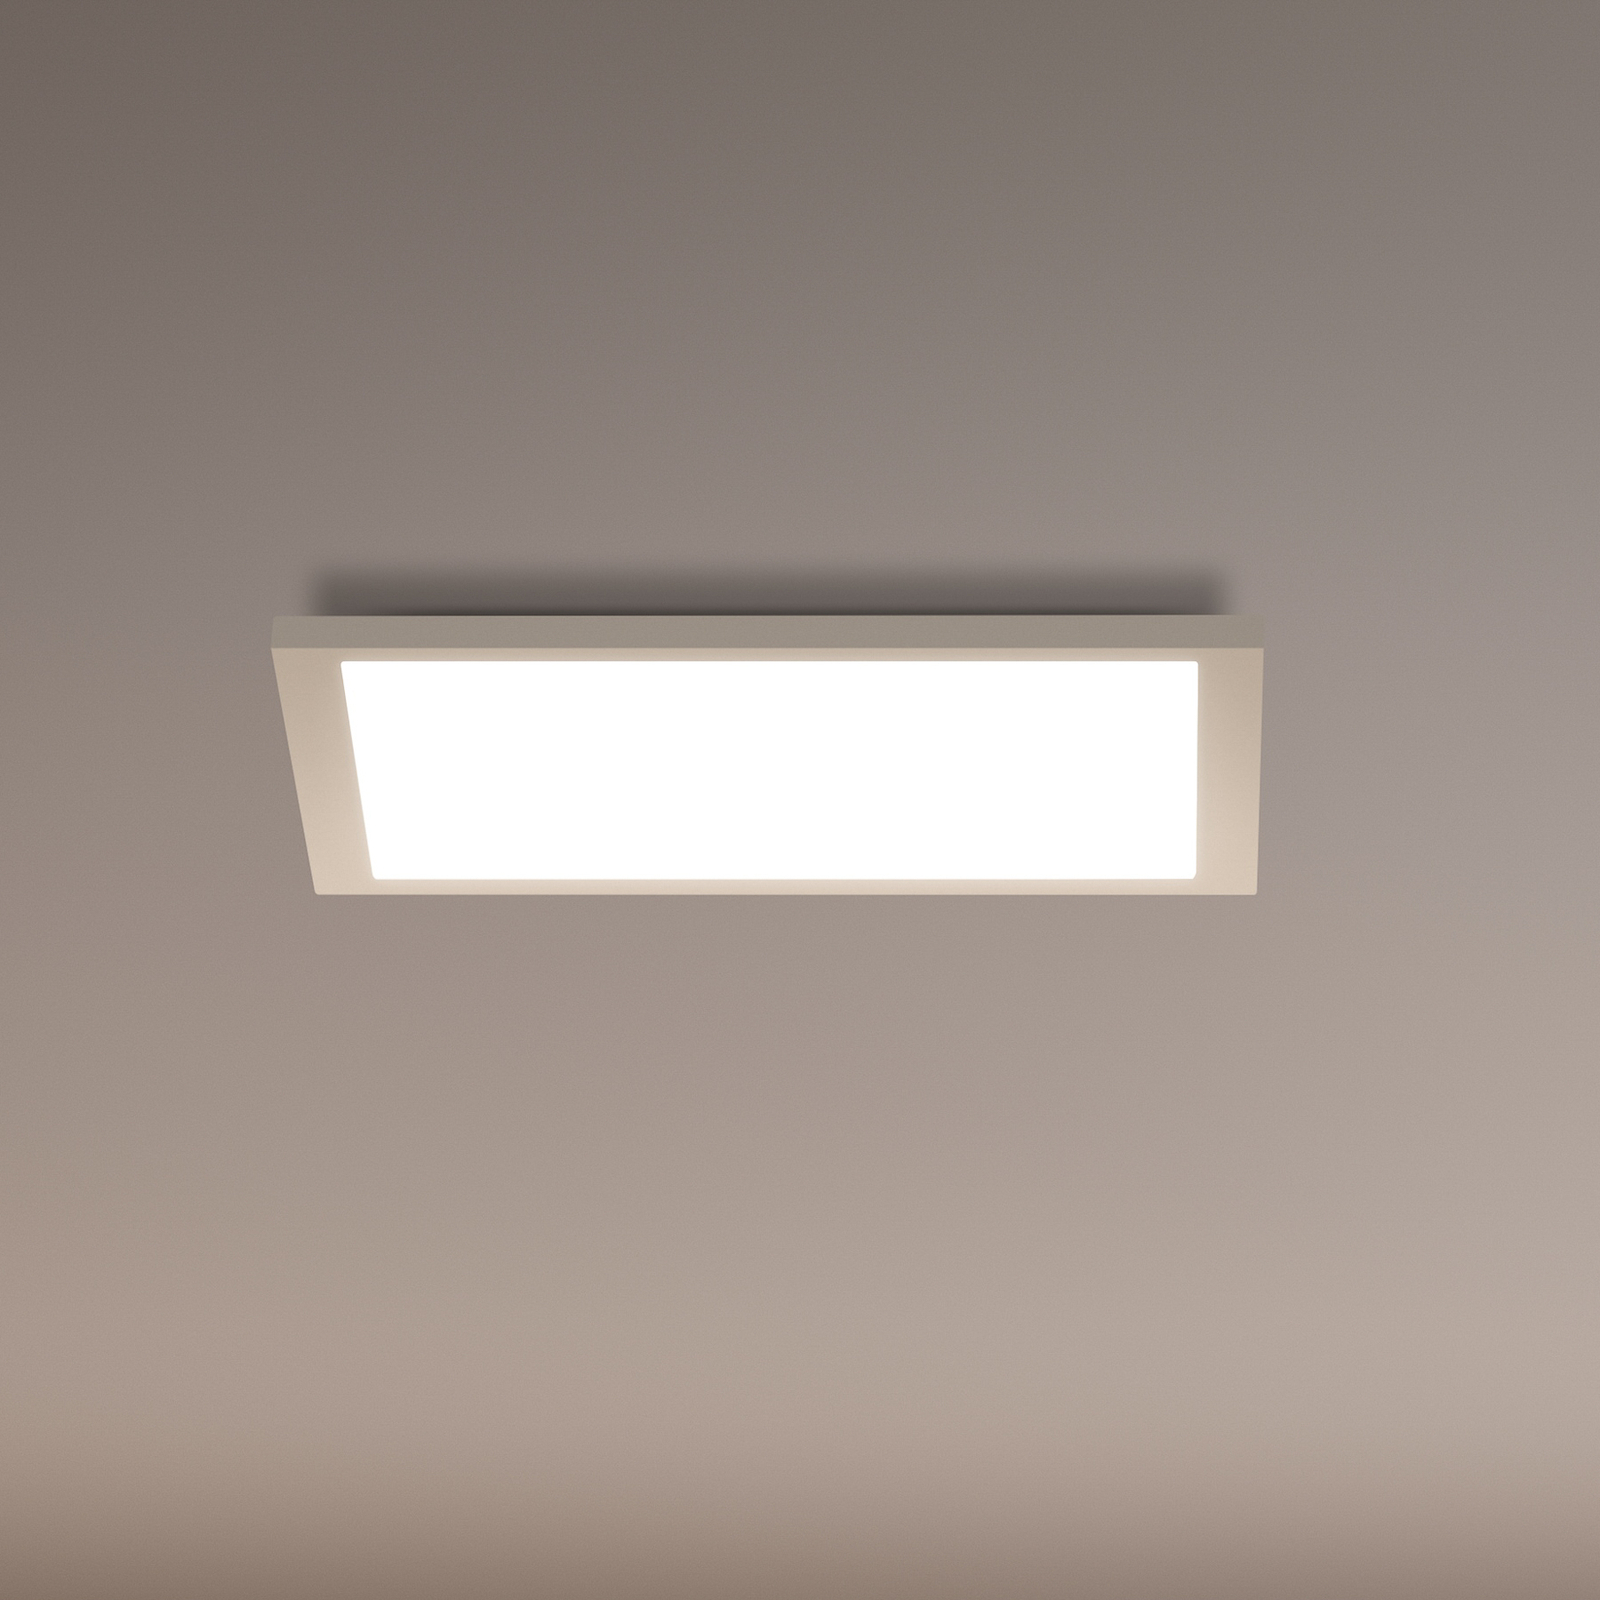 WiZ LED ceiling light panel, white, 30x30 cm